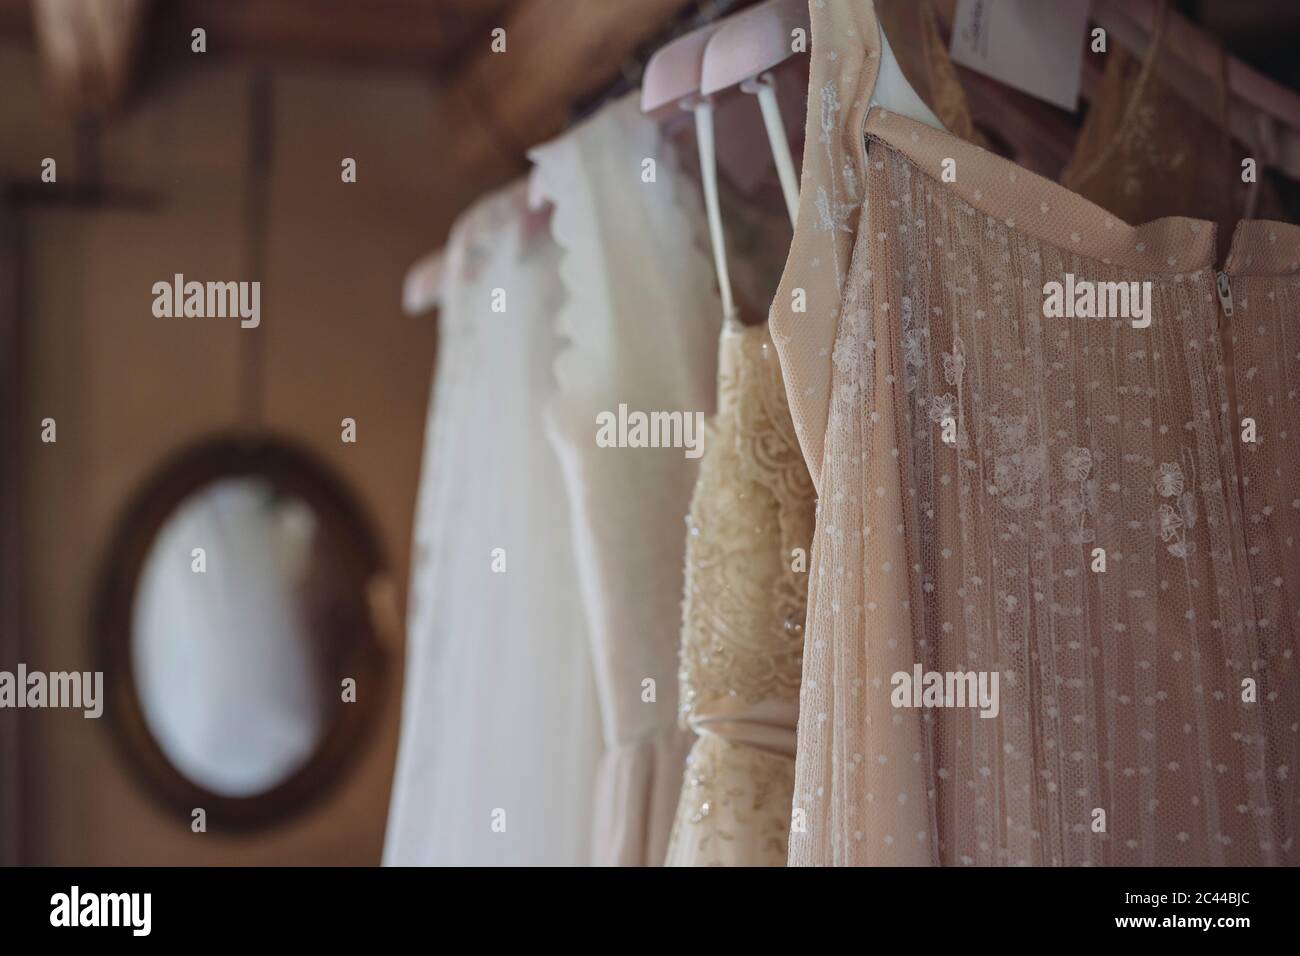 Hochzeitskleider hängen an Kleiderhangen Stockfoto